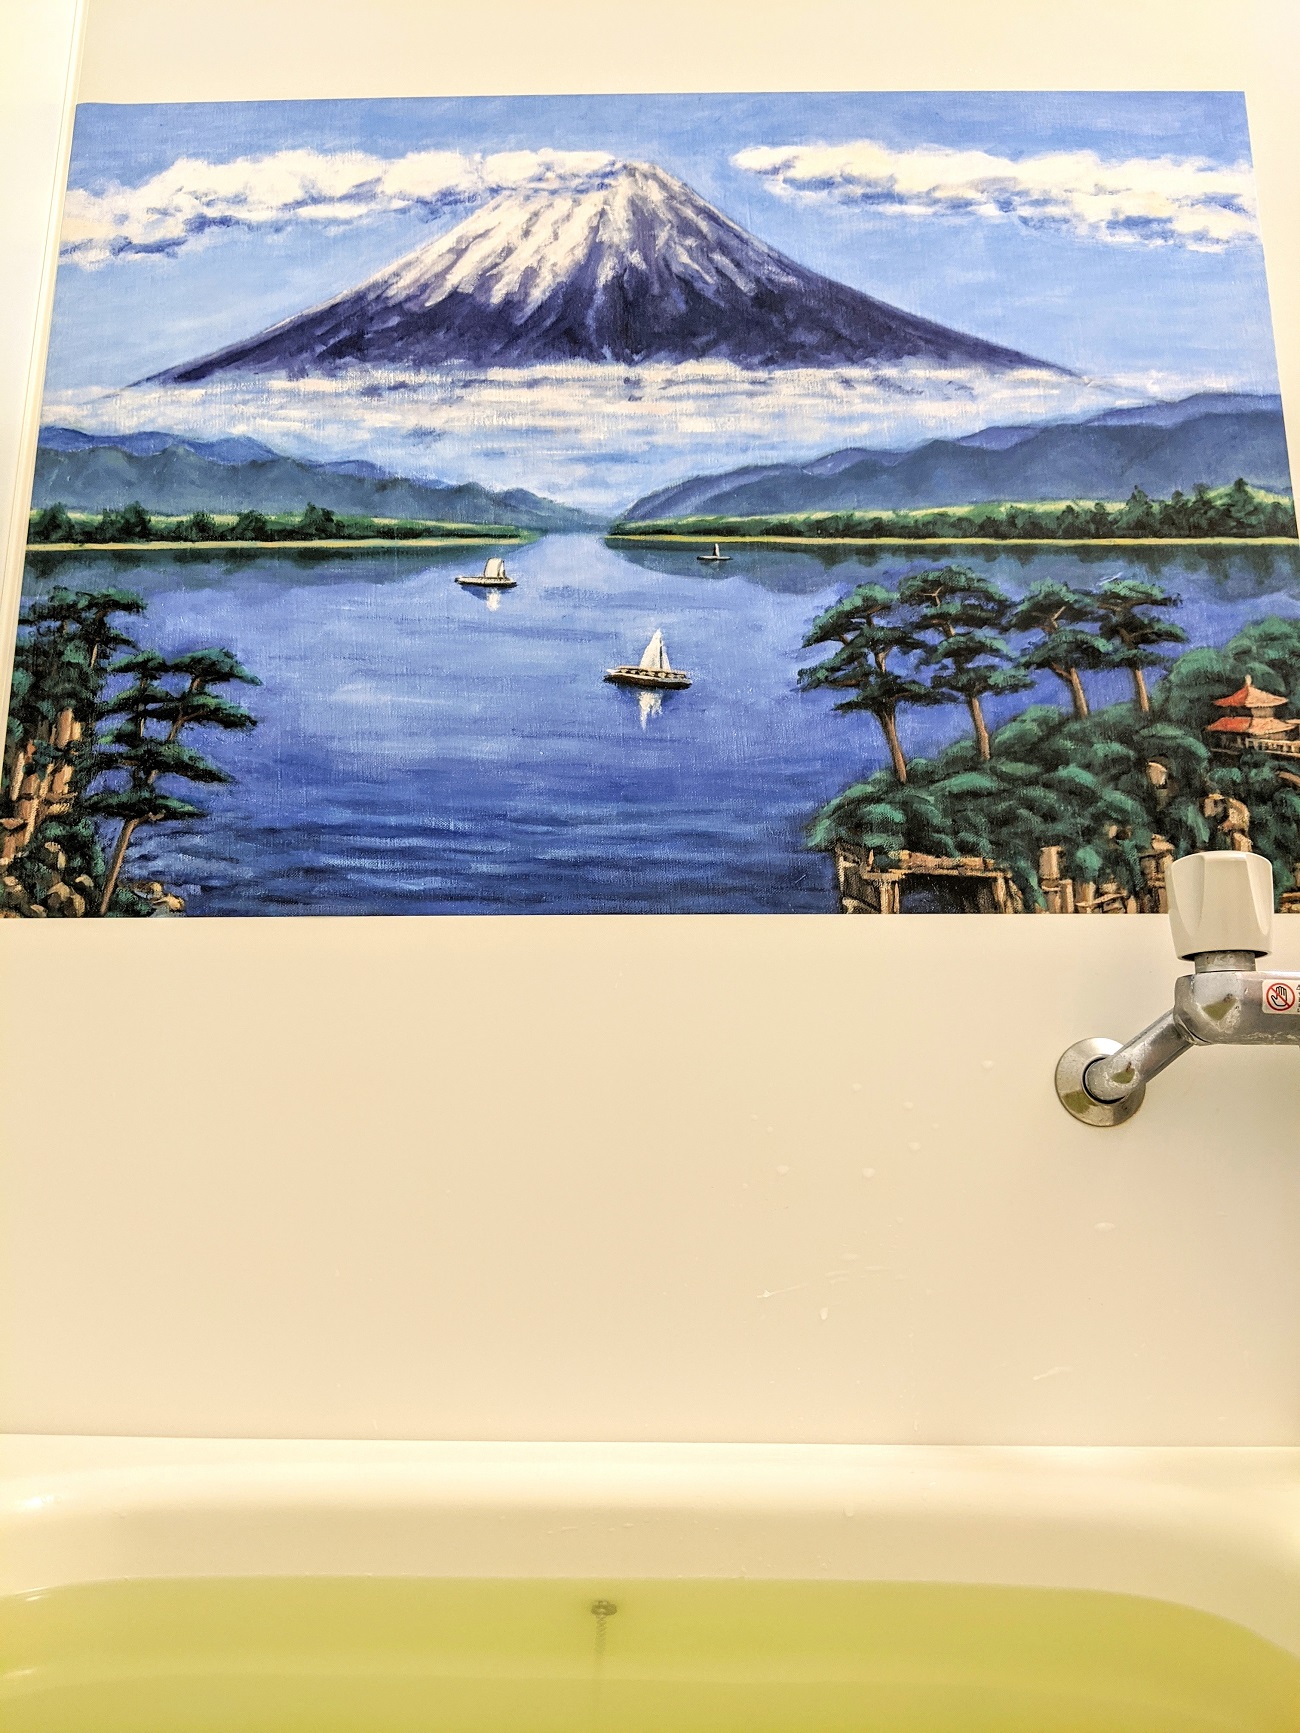 ライフハック お風呂に 富士山の絵 を飾ったら銭湯気分が味わえるかも 絶景温泉テーマパークが完成した ロケットニュース24